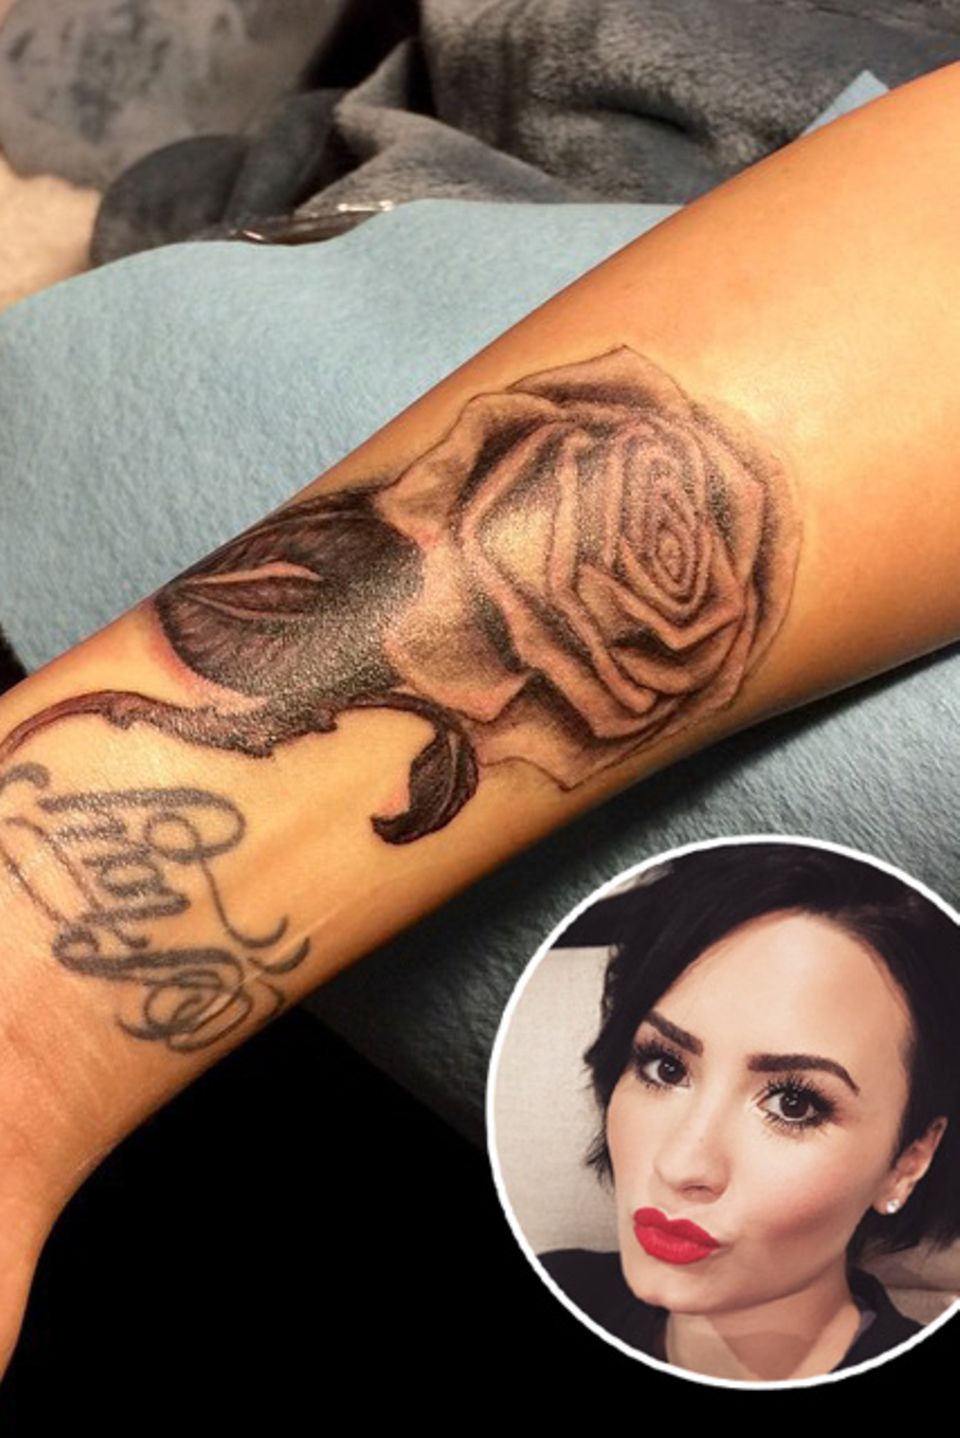 Mit diesem neuen Tattoo verdeckt Demi Lovato ihr altes ungeliebtes Lippen-Motiv. Zum Glück hat sie einen talentierten Bruder, der zufällig Tätowierer ist.